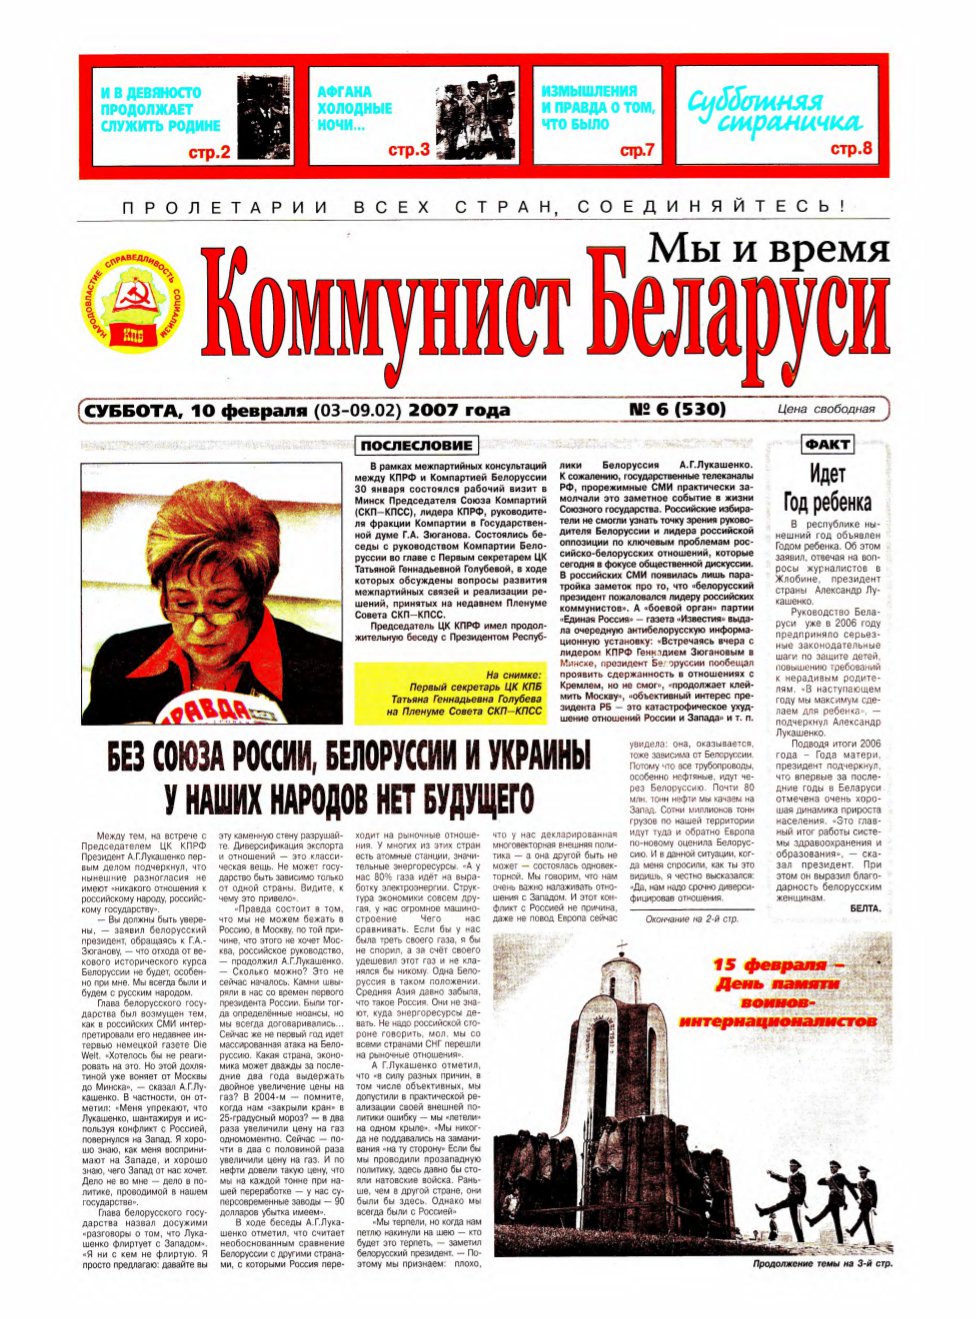 Коммунист Белорусси 06 (530) 2007